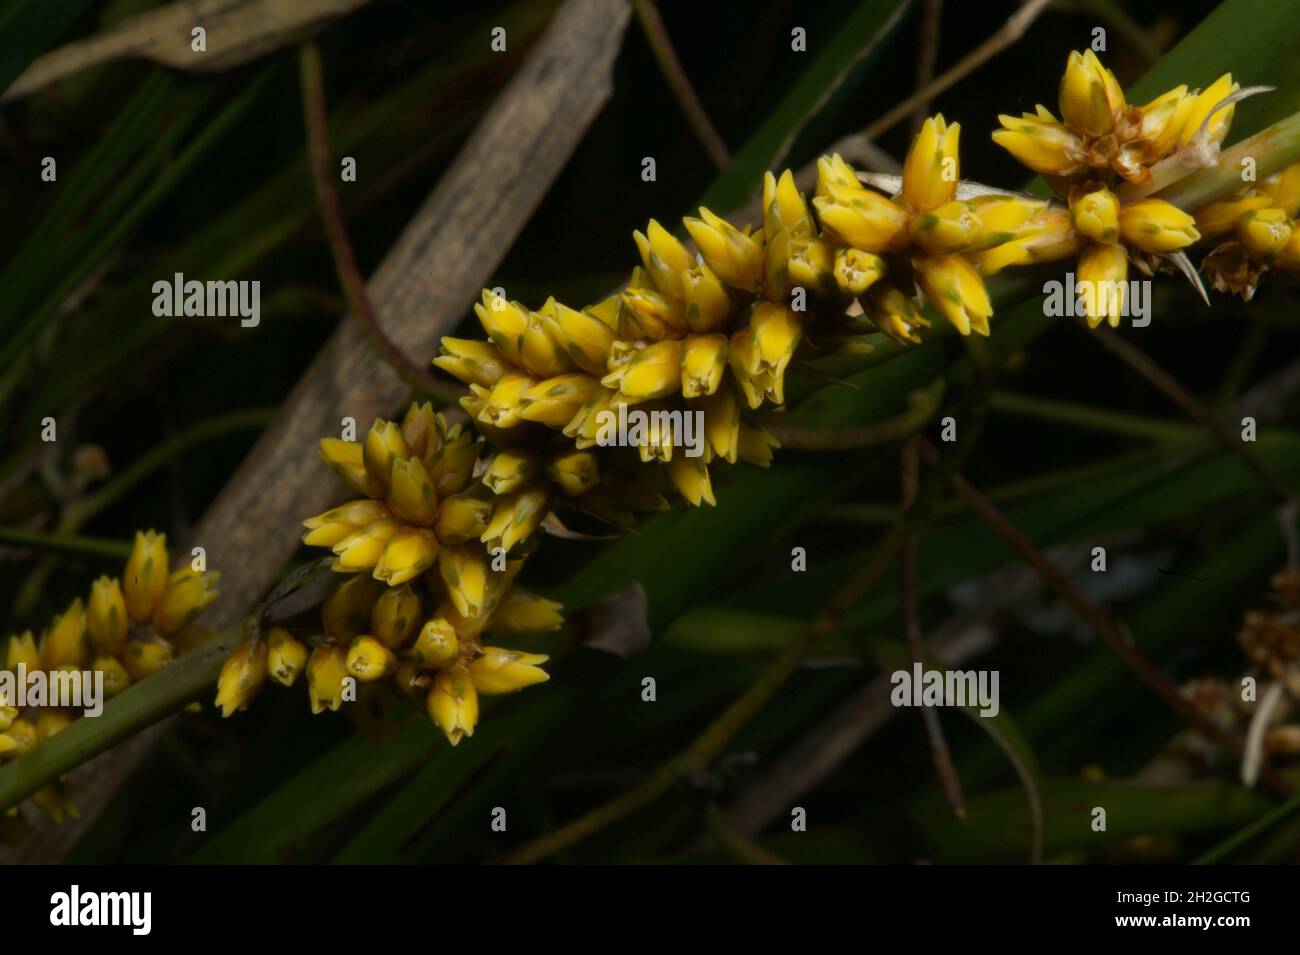 Wenn Sie Gräser zur Dekoration in einen Topf gepflanzt haben - so sehen ihre Blumen aus. Wattle Mat Rush (Lomandra filiformis) am Hochkins Ridge. Stockfoto